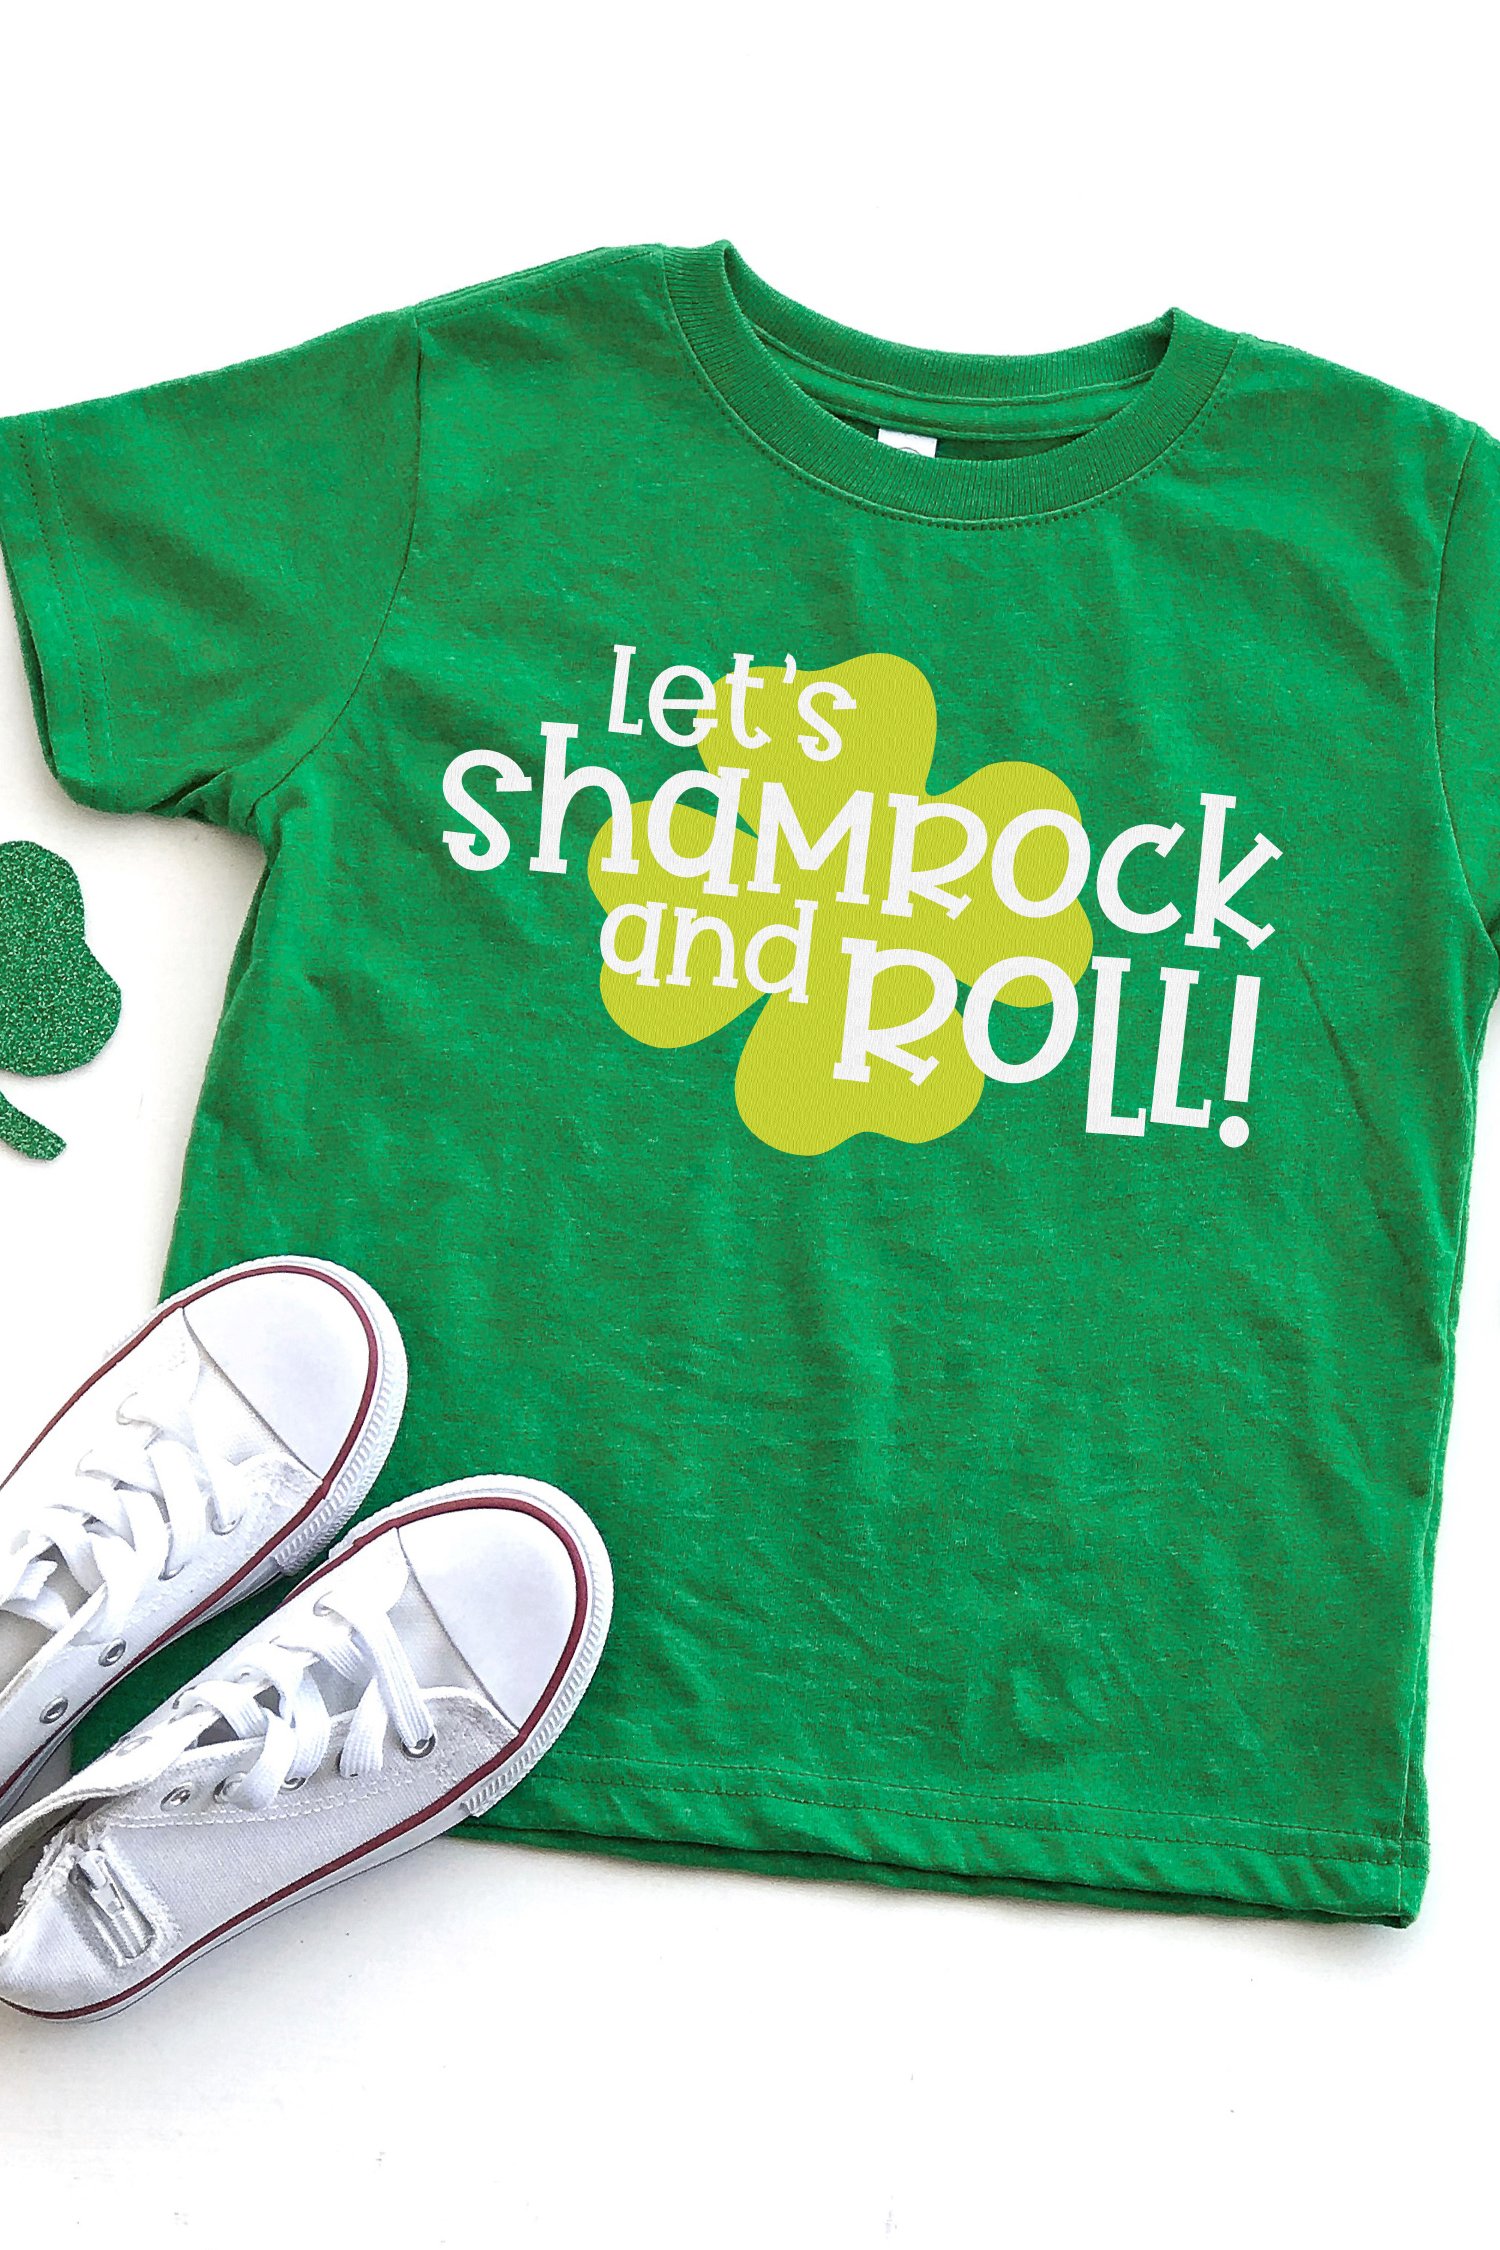 St Patrick/'s day shirt Toddler  Youth Raglan Shirt Patrick/'s Day Lucky Shamrock Raglan Shirt   St